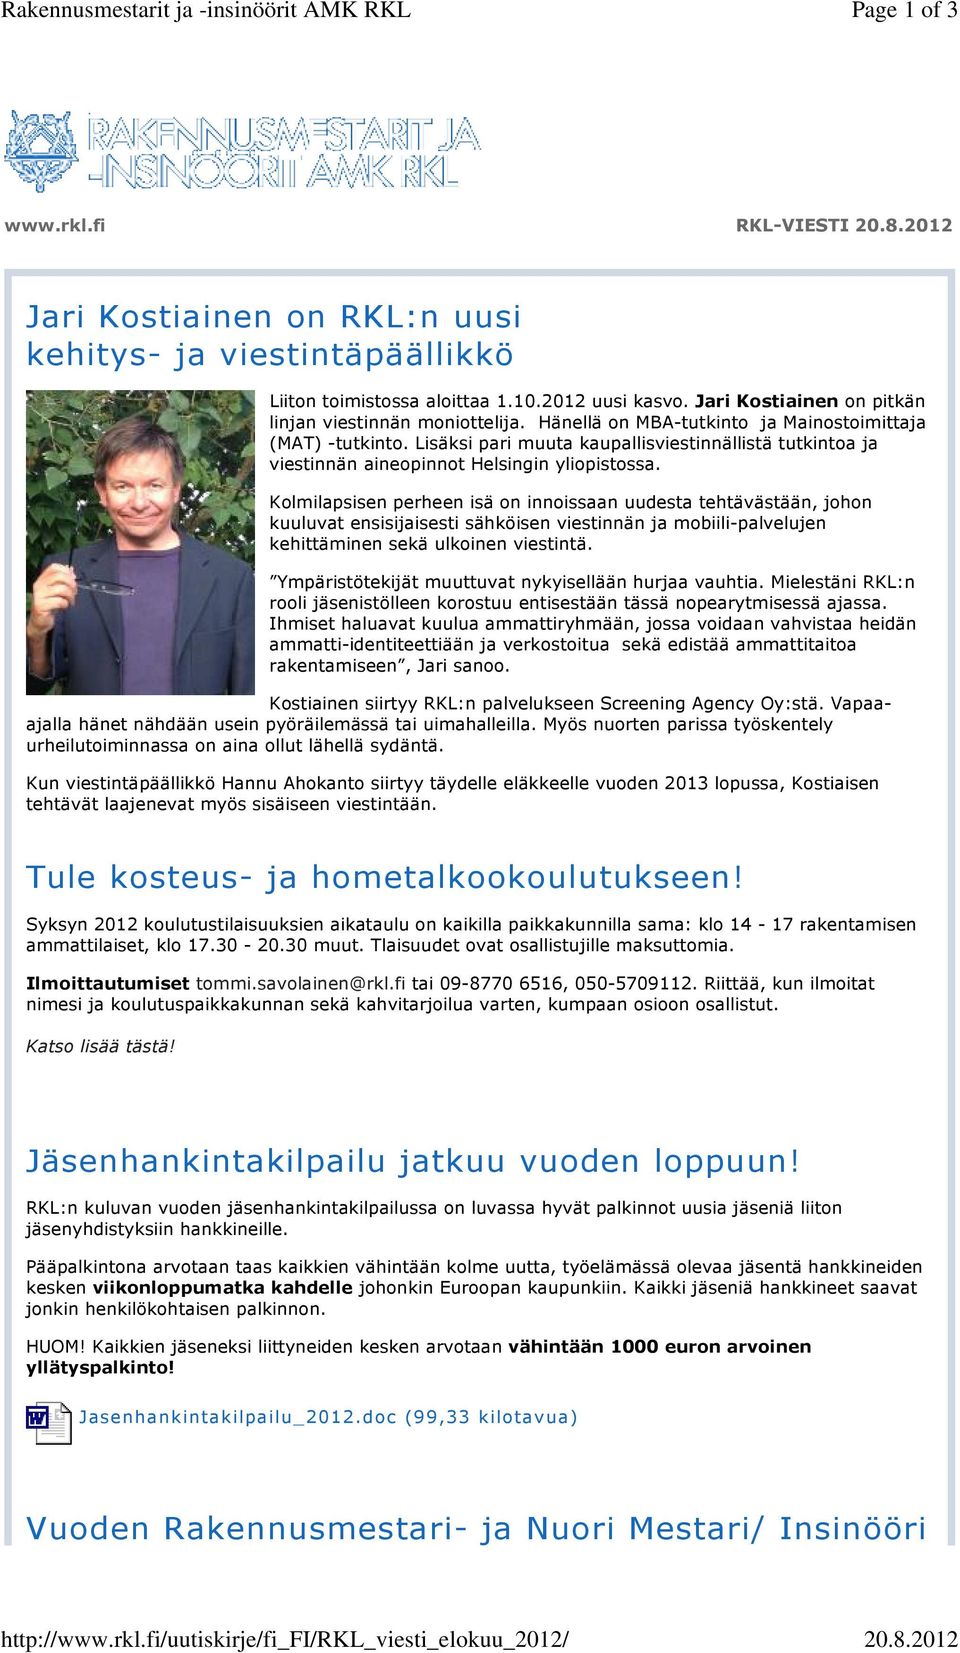 Jari Kostiainen on pitkän linjan viestinnän moniottelija. Hänellä on MBA-tutkinto ja Mainostoimittaja (MAT) -tutkinto.